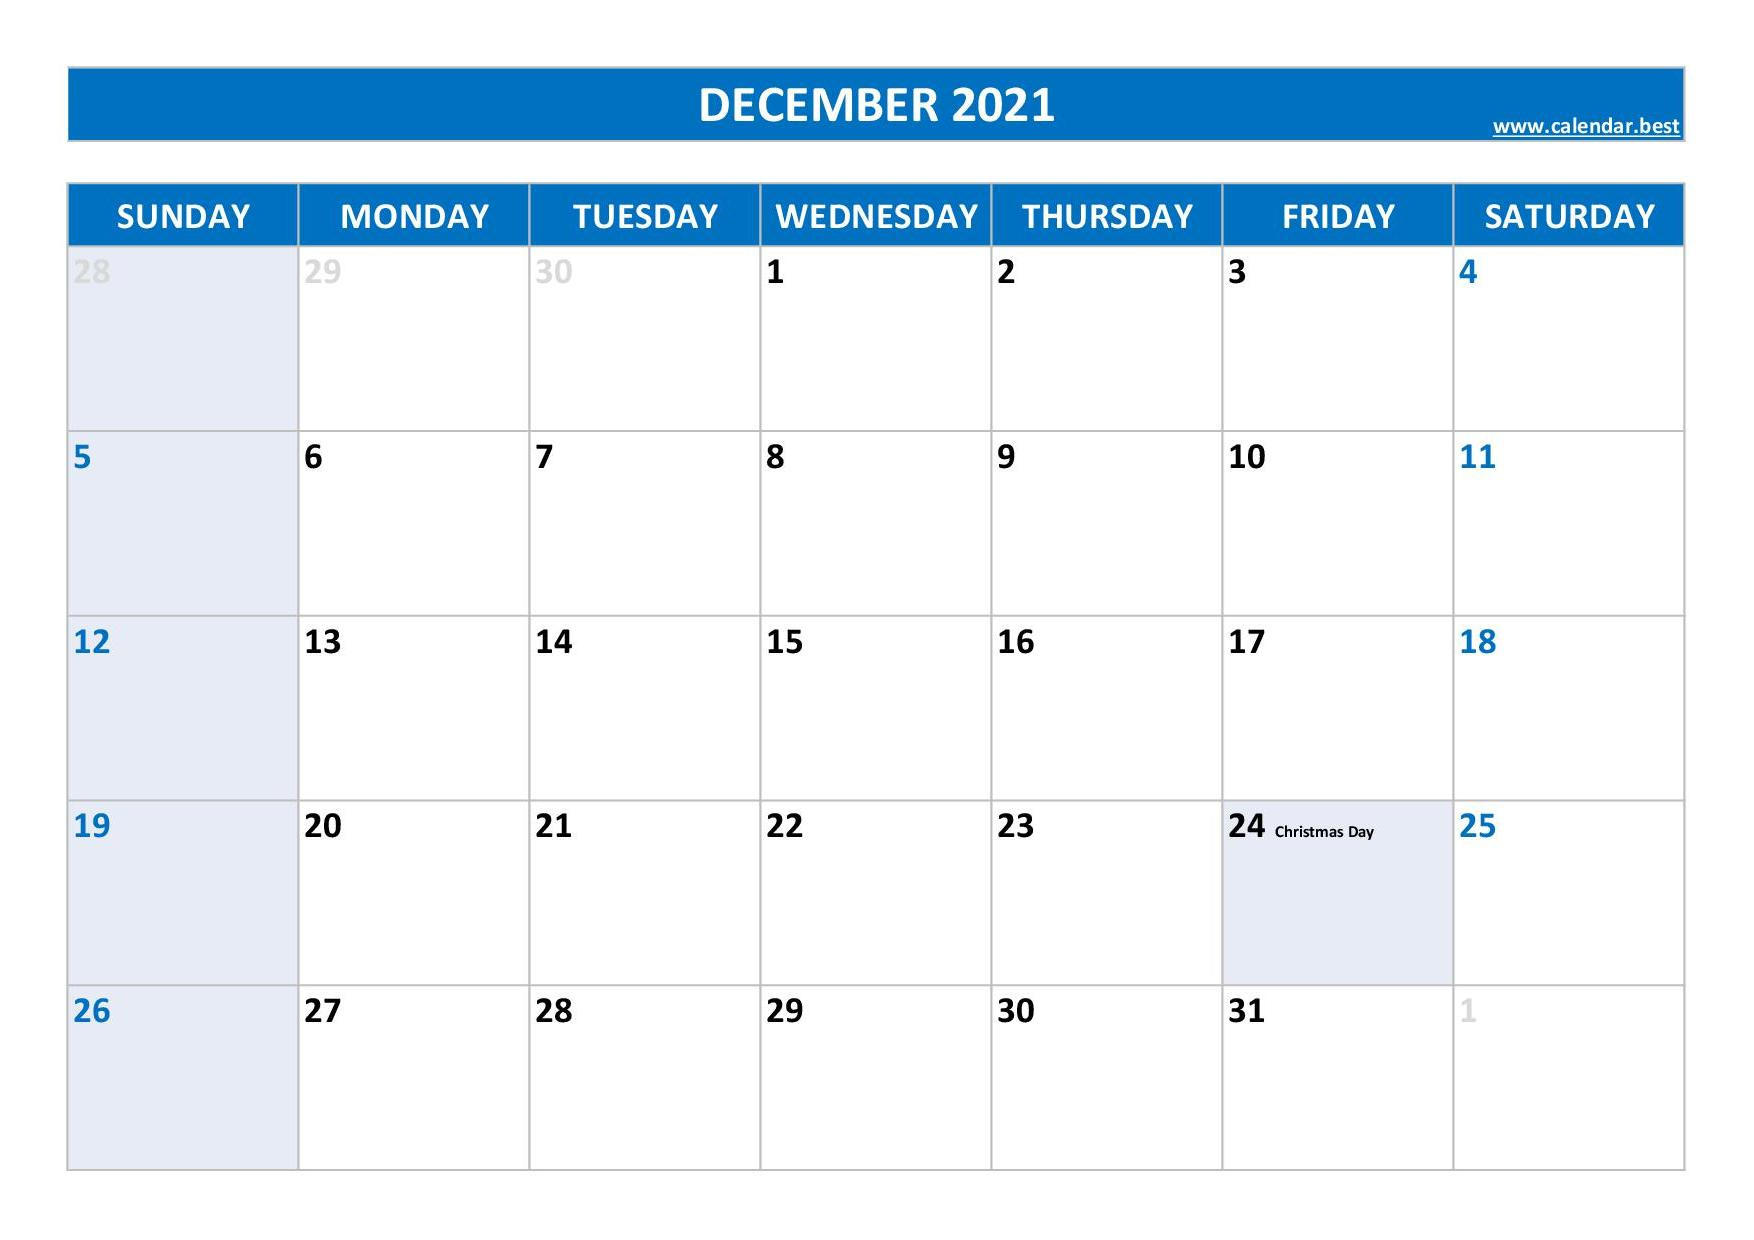 December 2021 Calendar -Calendar.best December 2021 Day Calendar